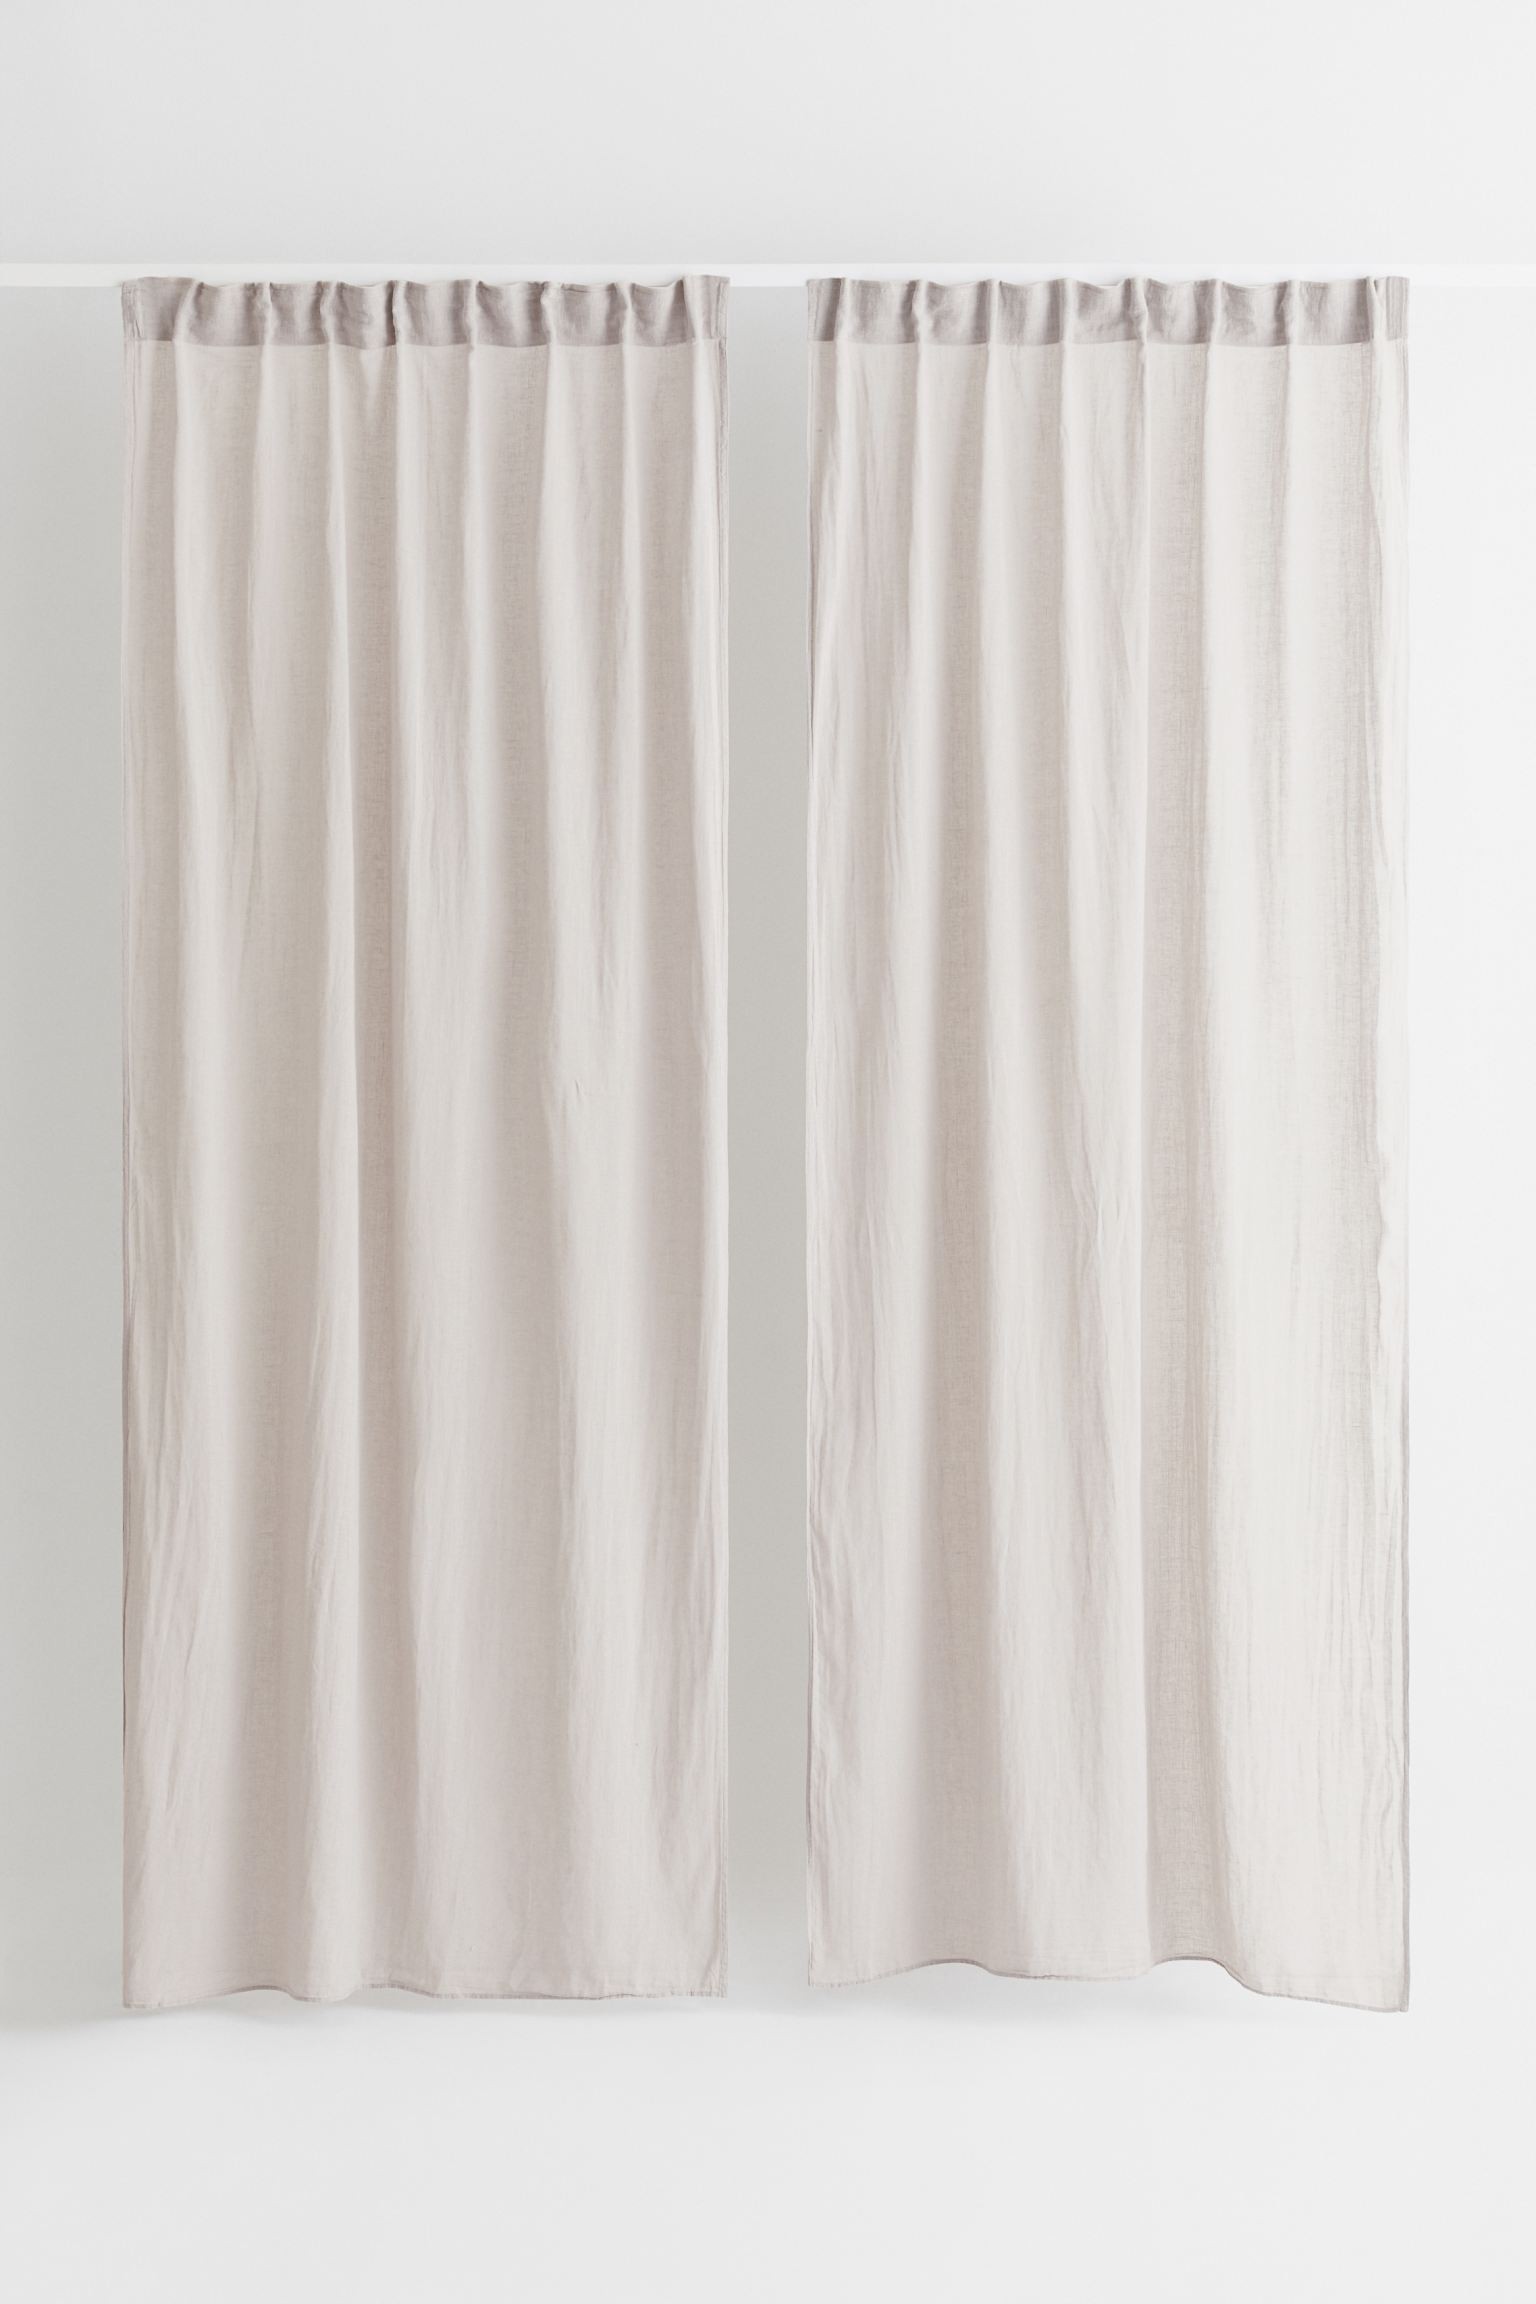 H&M Home Багатофункціональна штора з суміші льону, 2 шт., Світло-сірий бежевий, 120x250 1039973005 | 1039973005